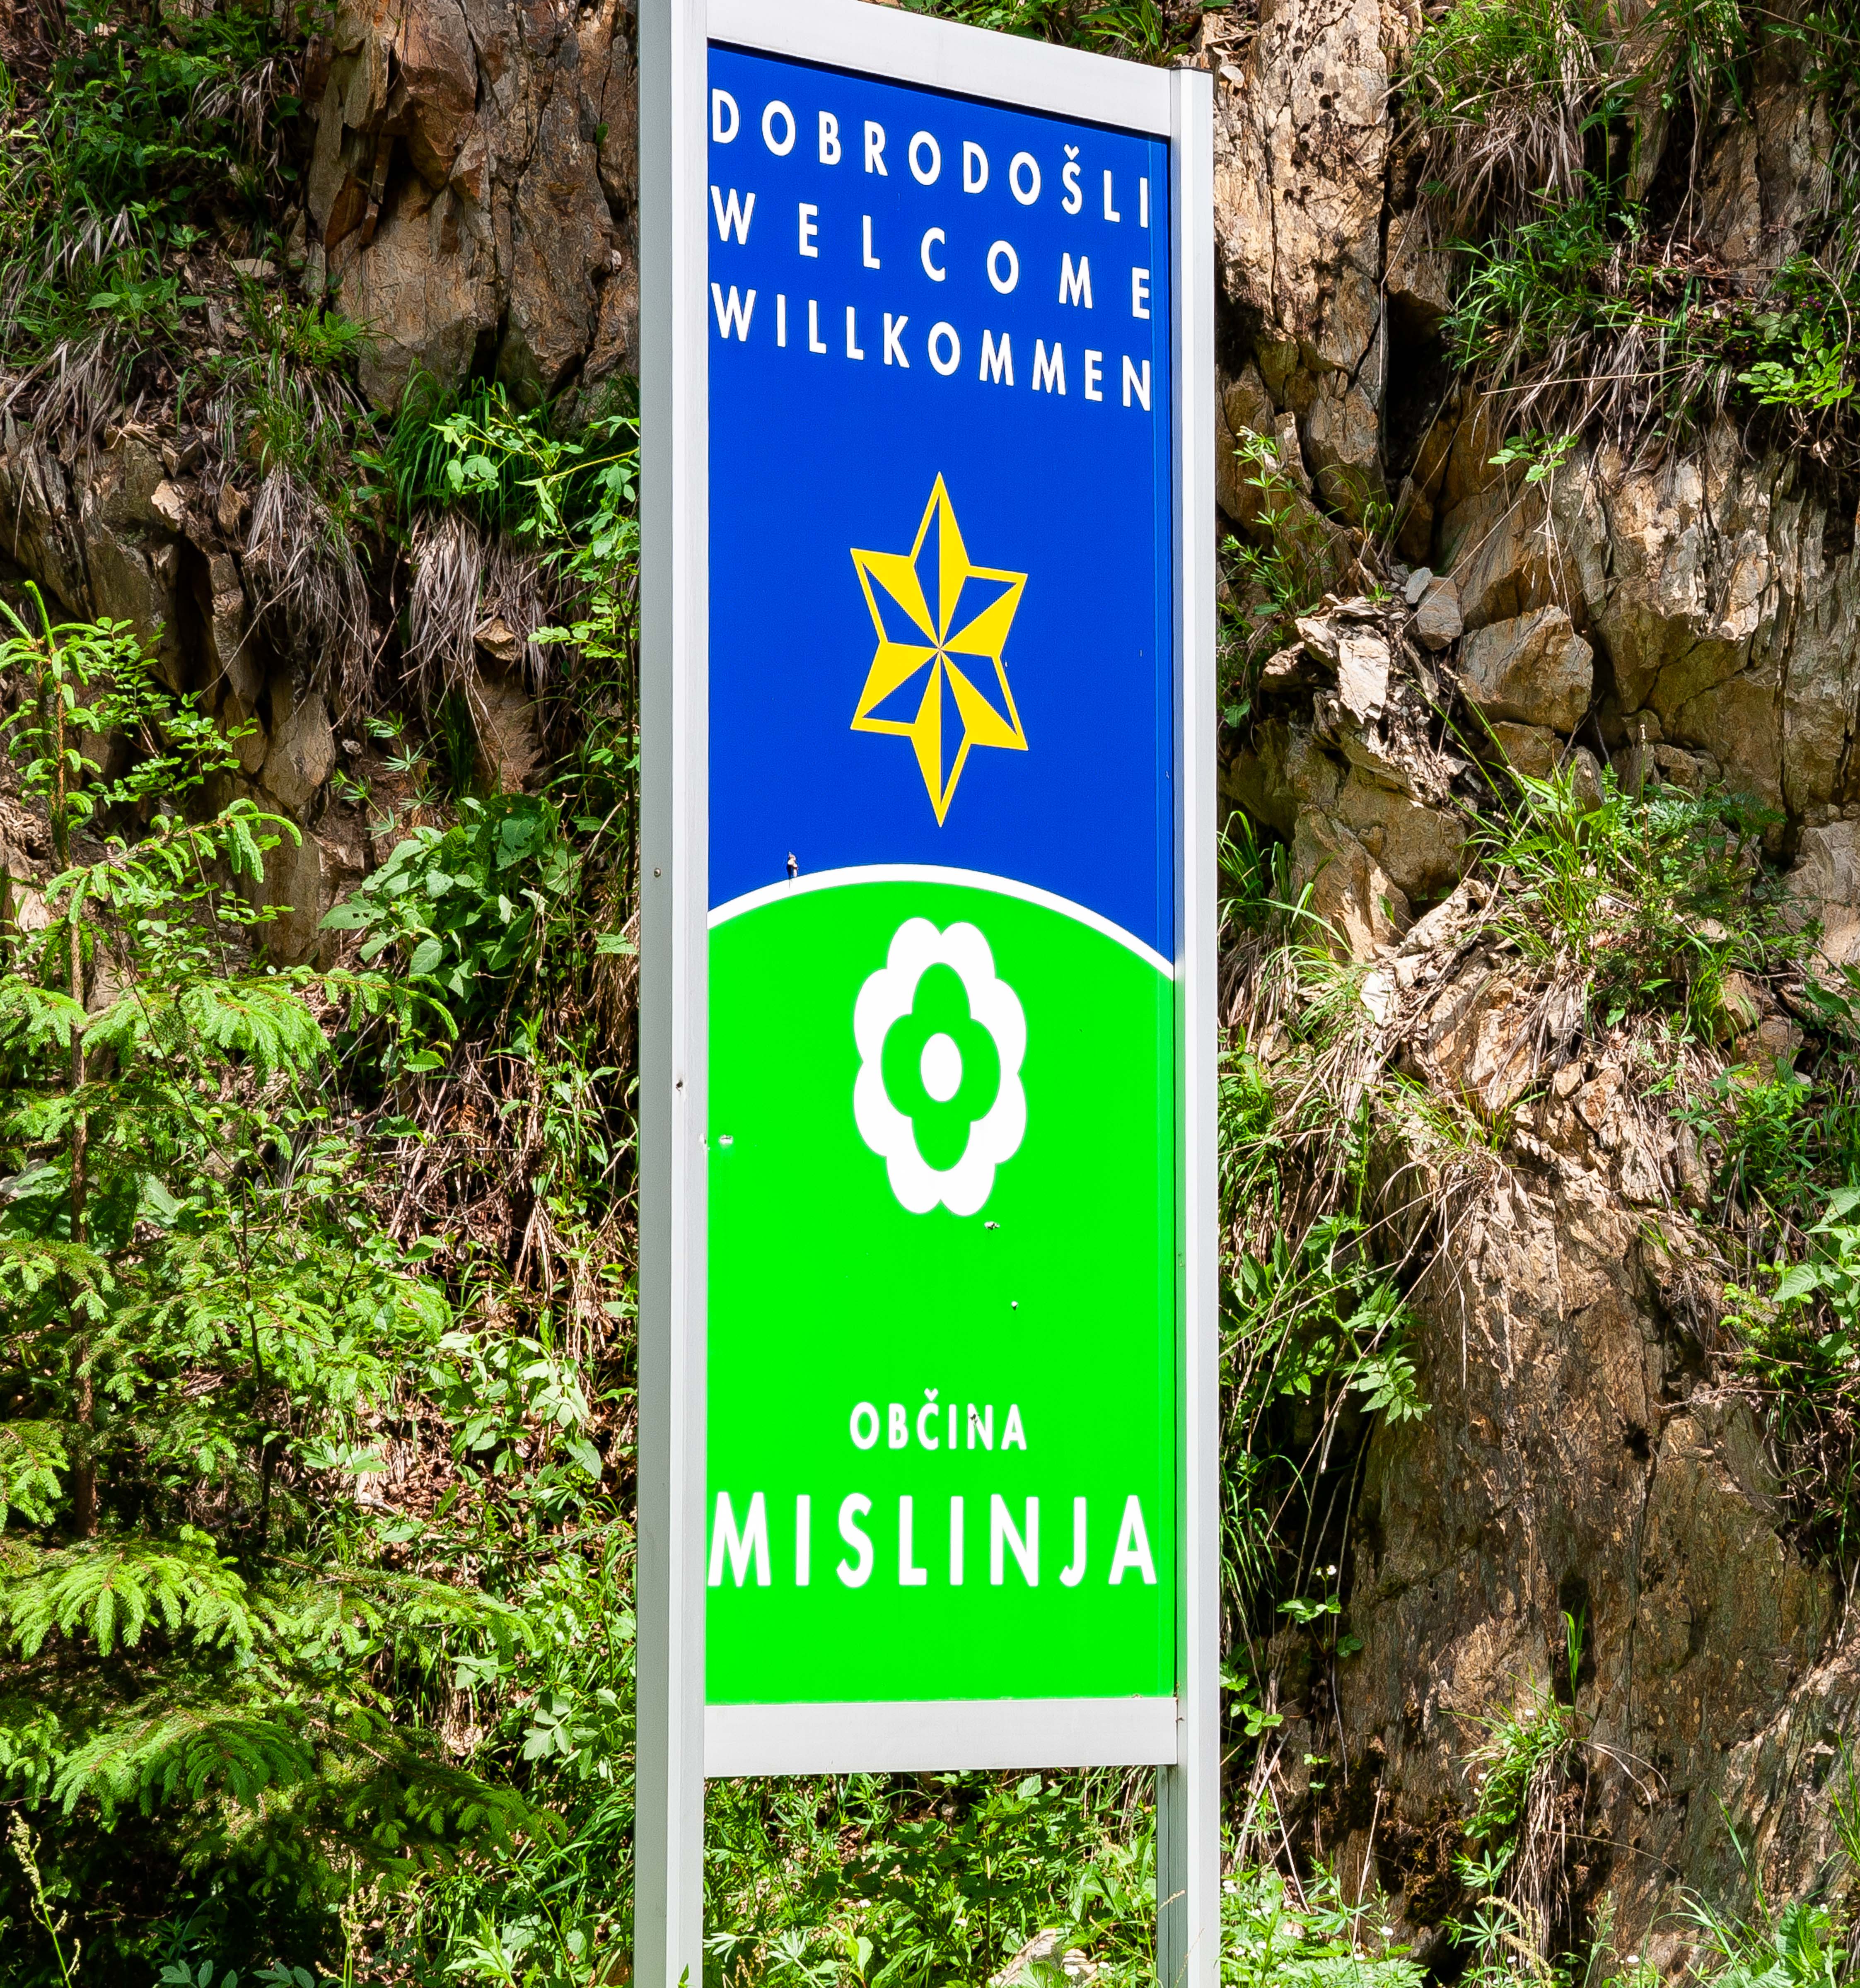 Slovenia, Mislinja Prov, Dobrodosli Obcina Mislinja, 2006, IMG 8595